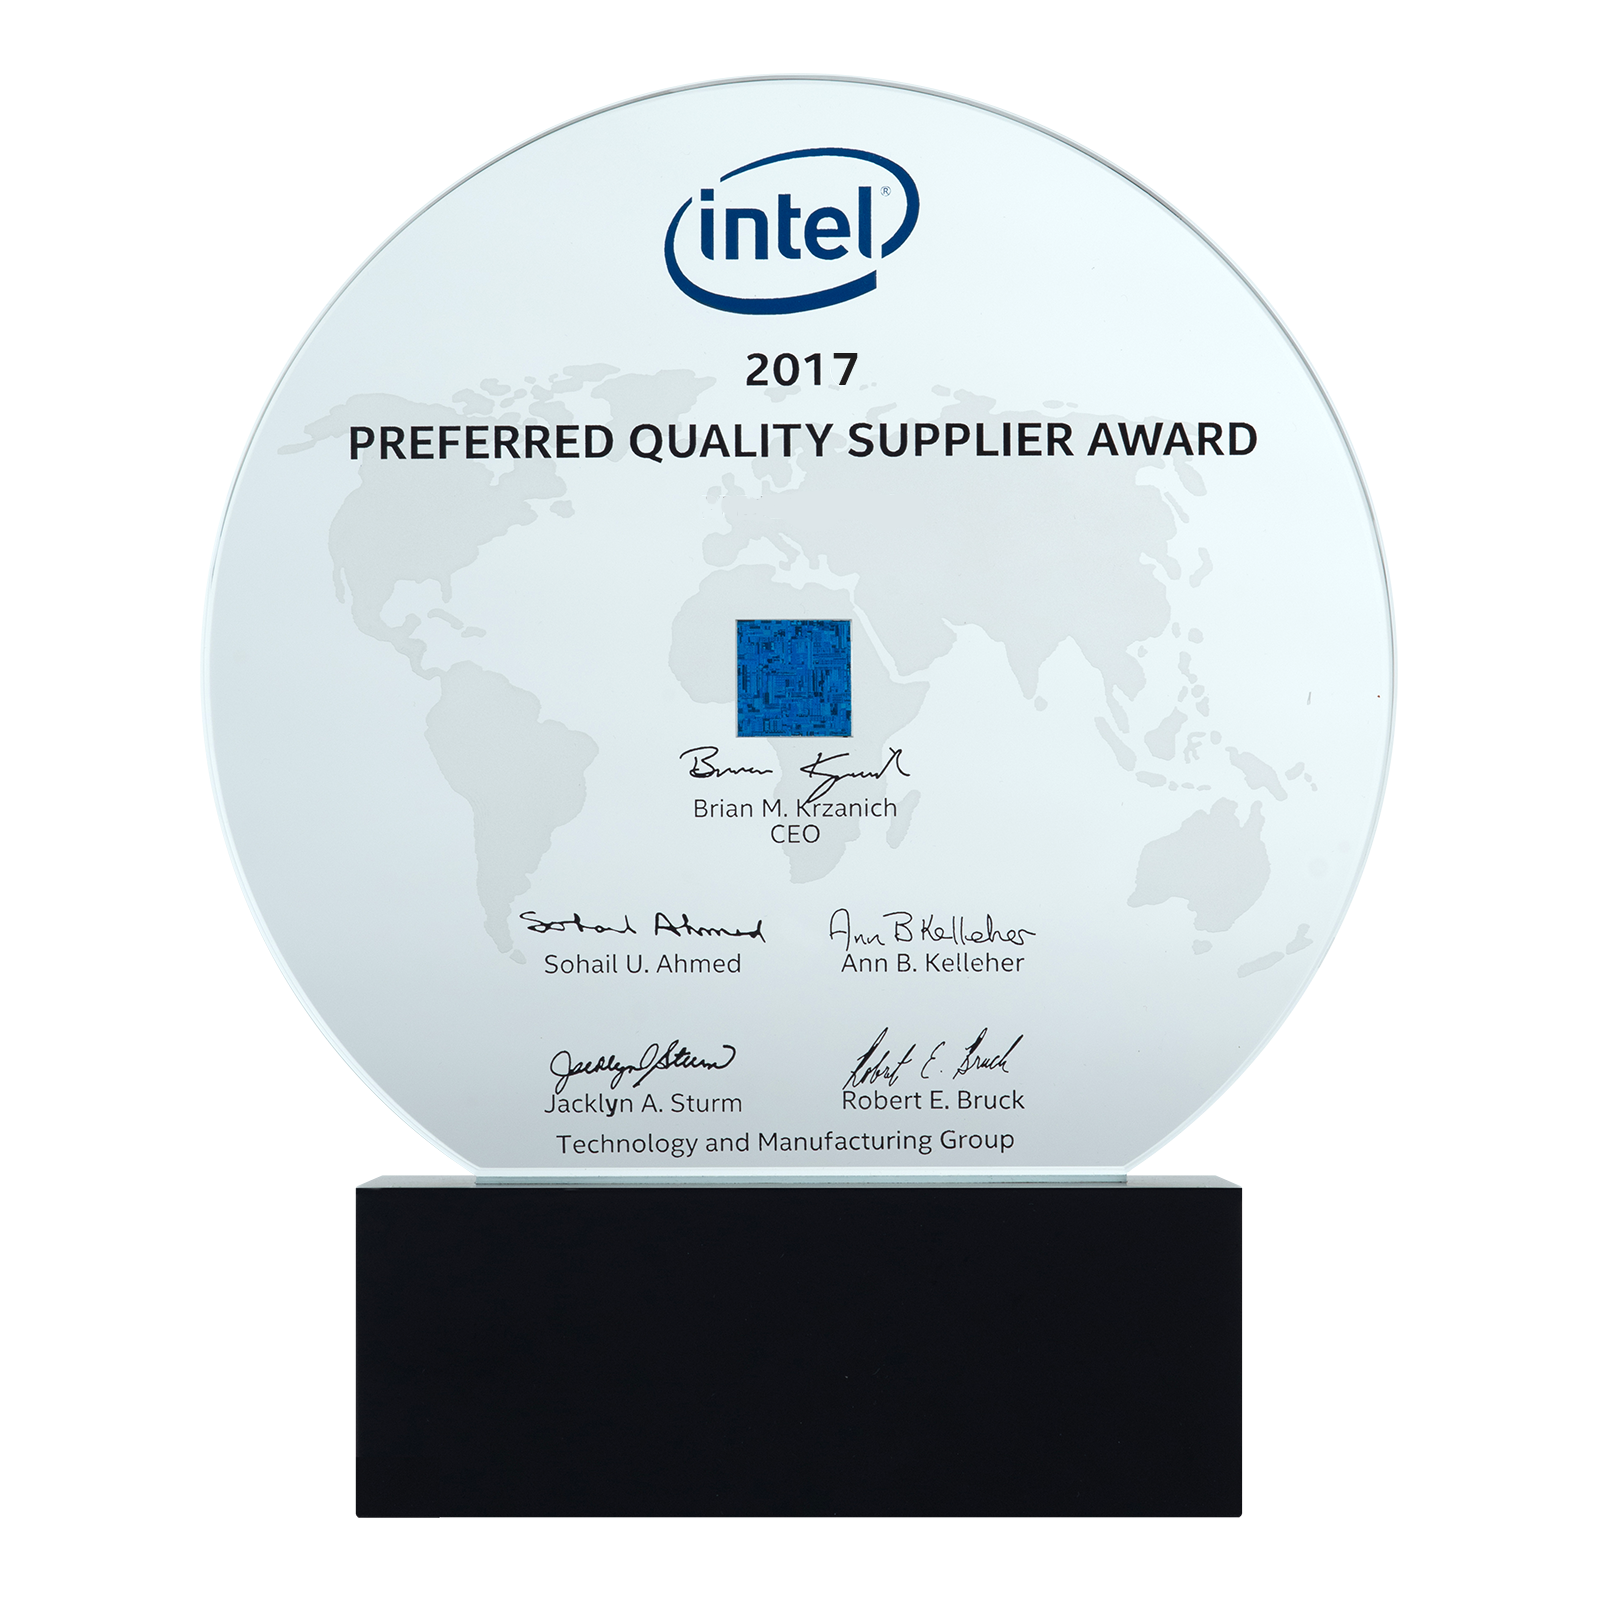 Intel 2017 Preferred Quality Supplier Award